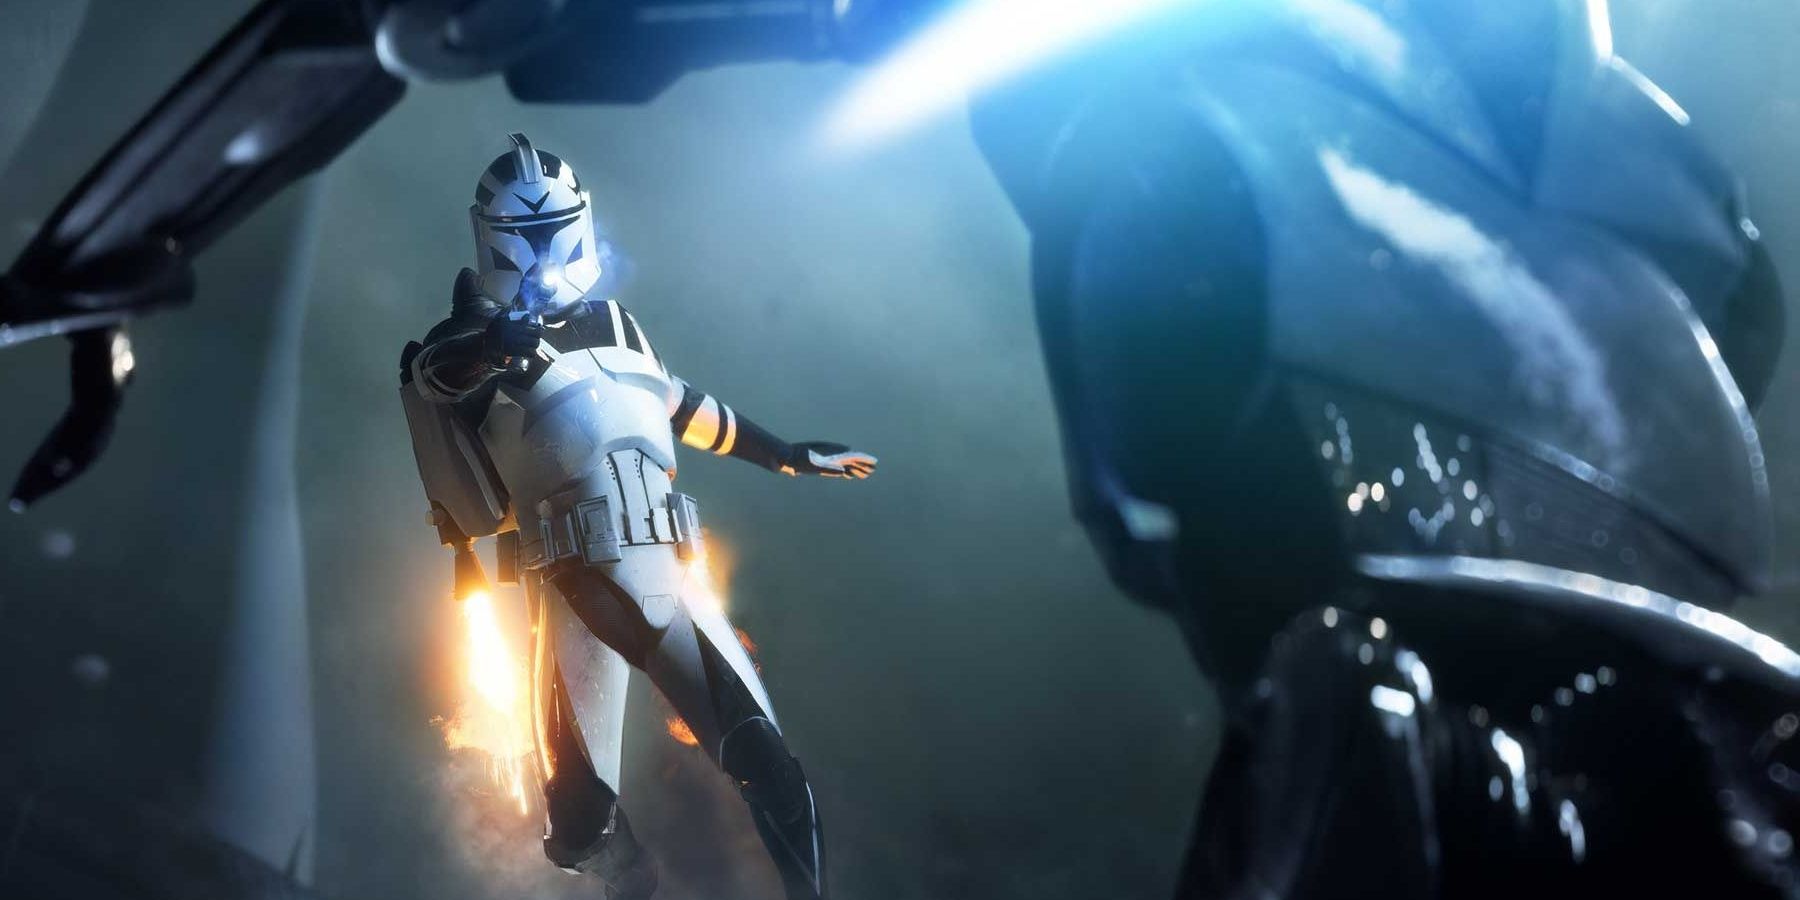 Jet Trooper Shooting Super Battle Droid in Star Wars Battlefront 2